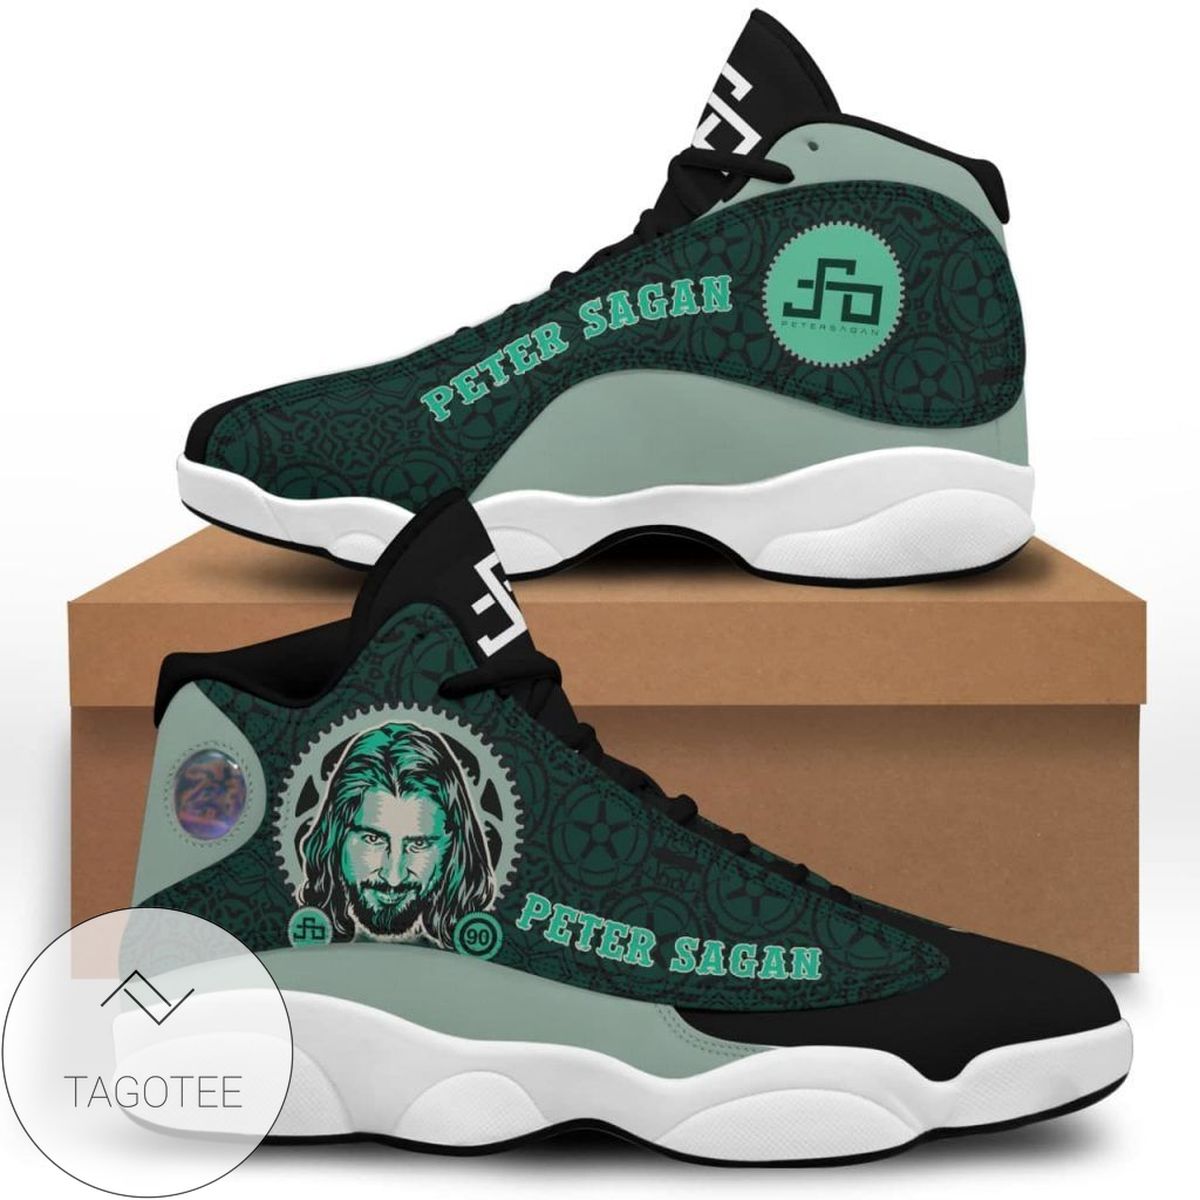 Peter Sagan Air Jordan 13 Shoes Sport Sneakers For Fan